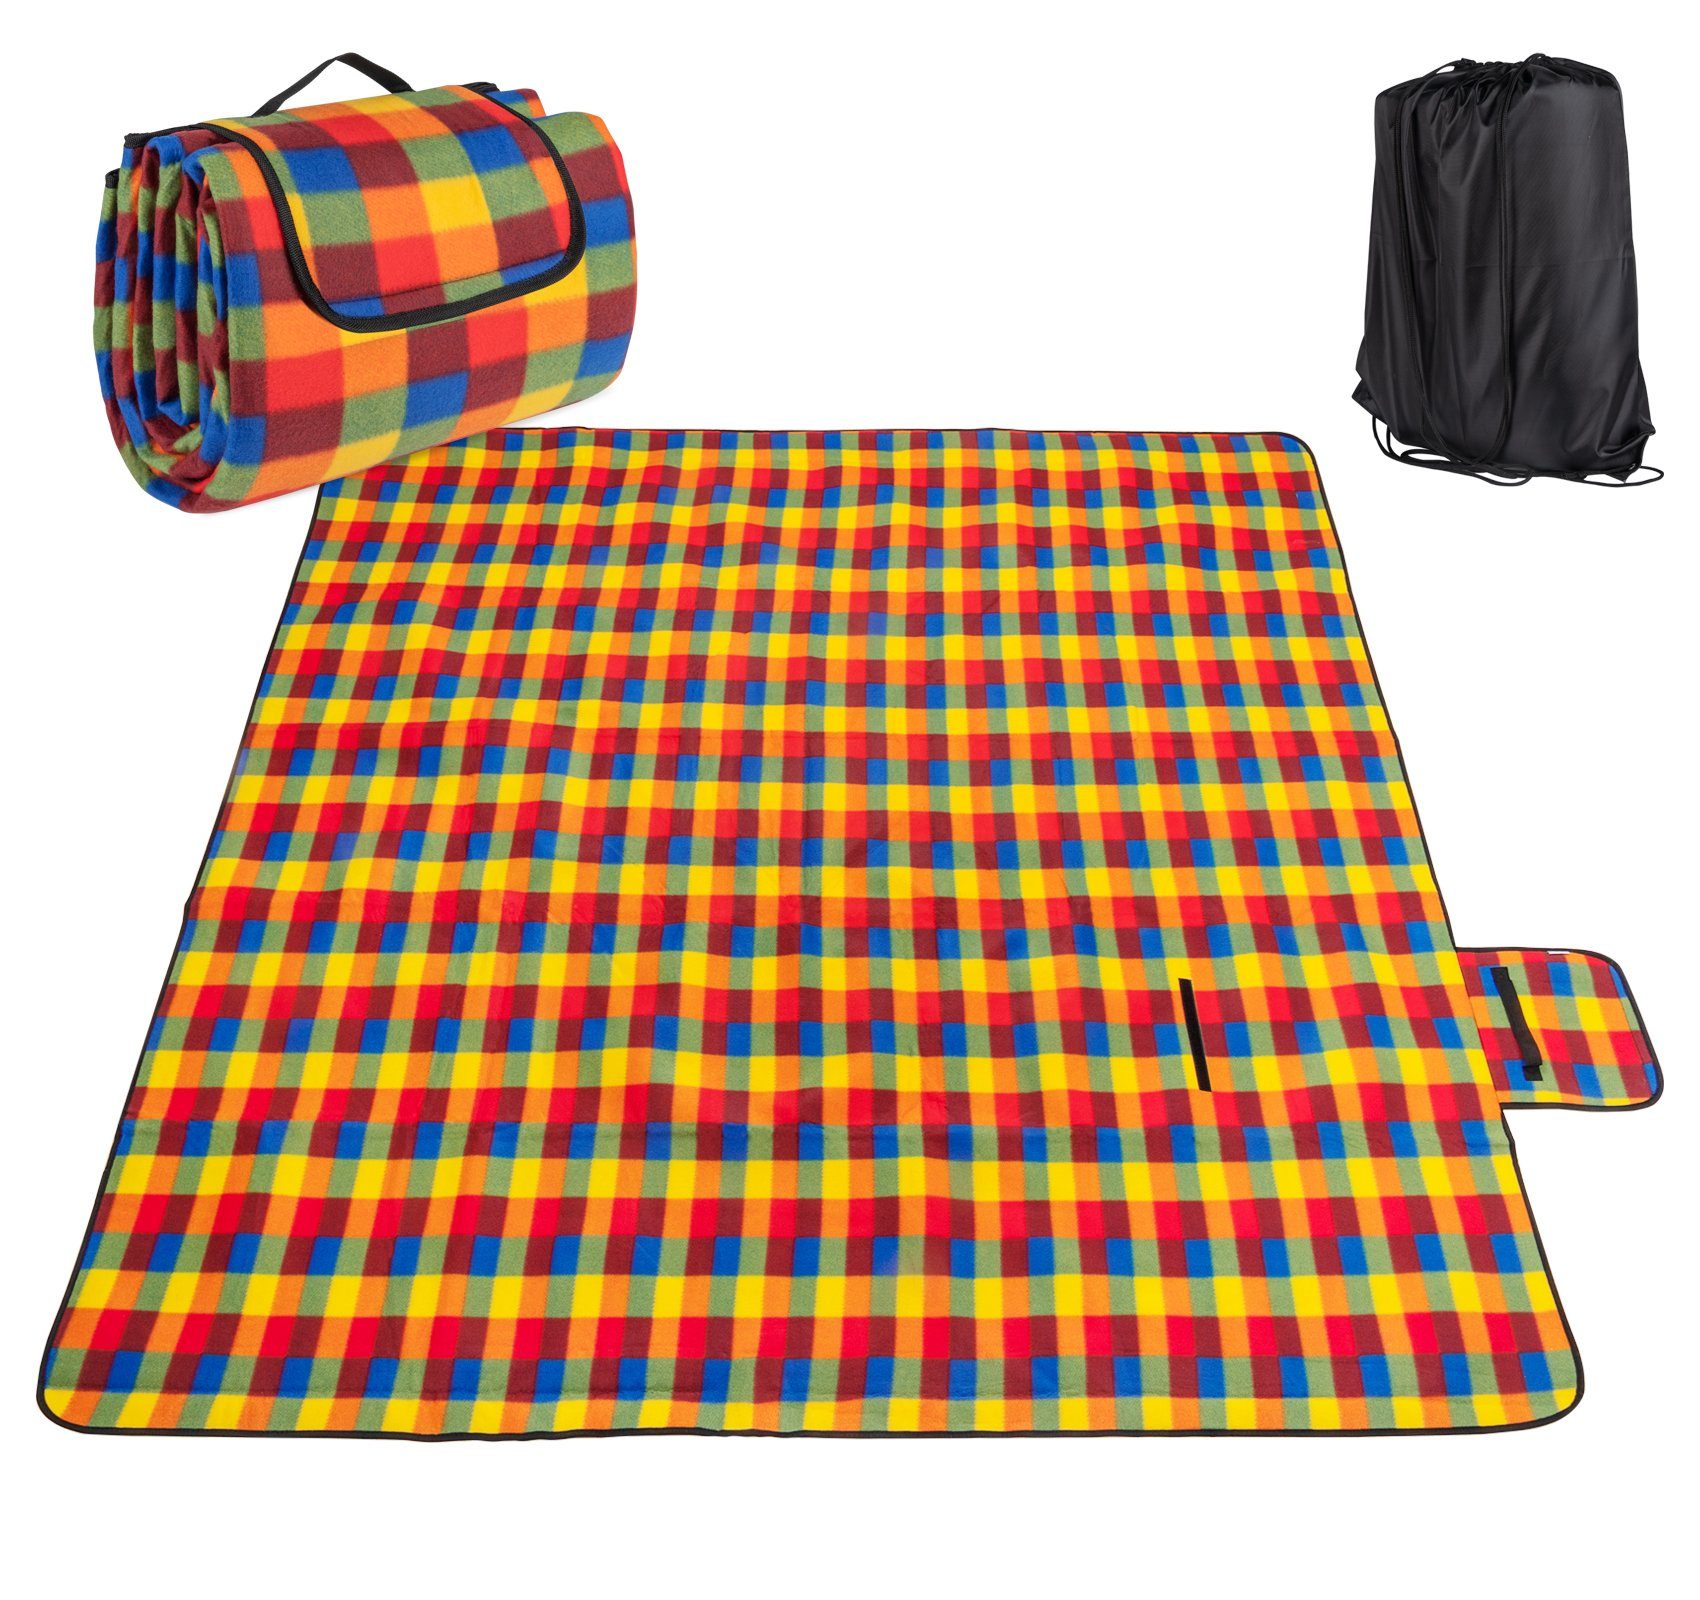 Picknickdecke Faltbar Fleece Stranddecke Camping-Decke 200x200cm Matte mit Rucksack, Homewit, Mit Aufbewahrungsbeutel, Wasserfeste Unterseite